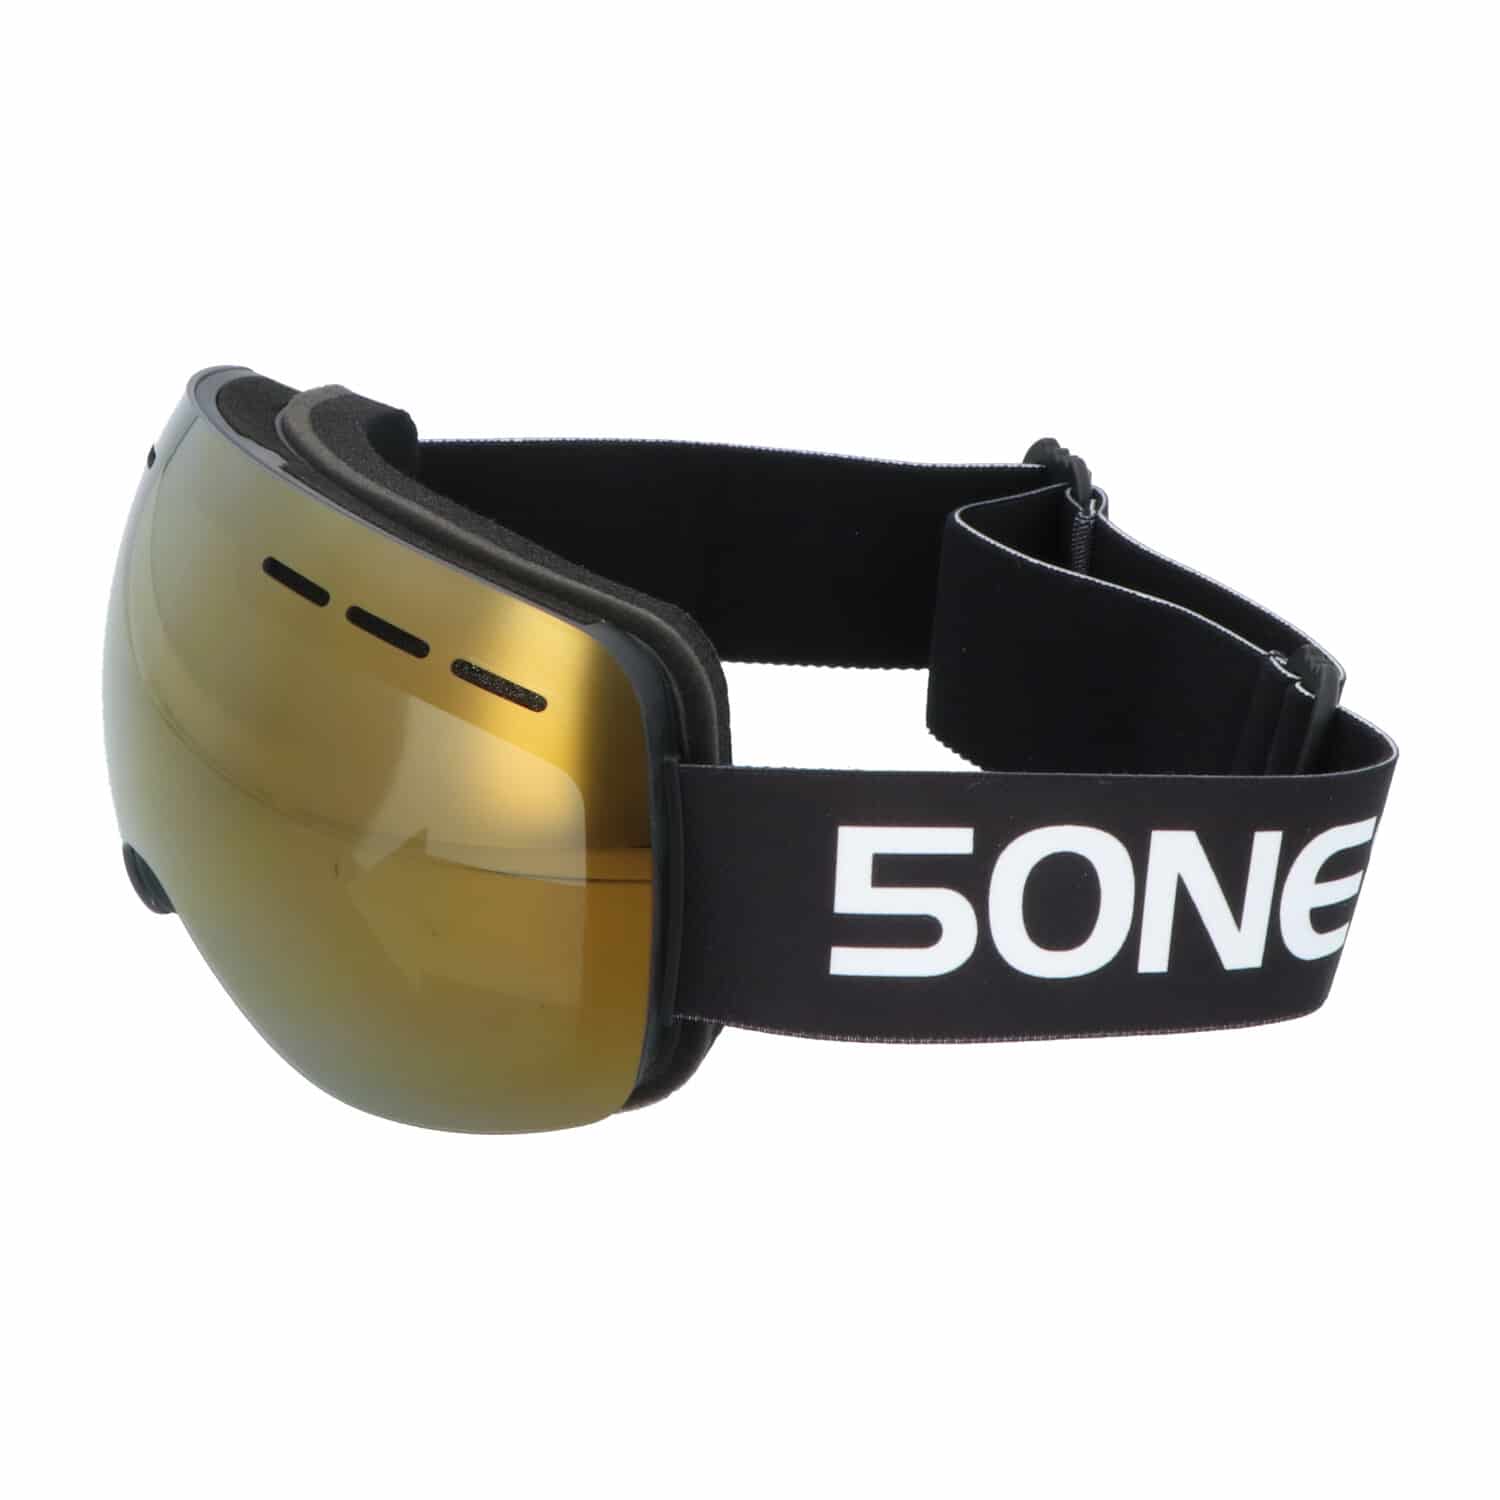 5one® Alpine 1 Bronze anti-condens Skibril met hardcase - Zwart frame